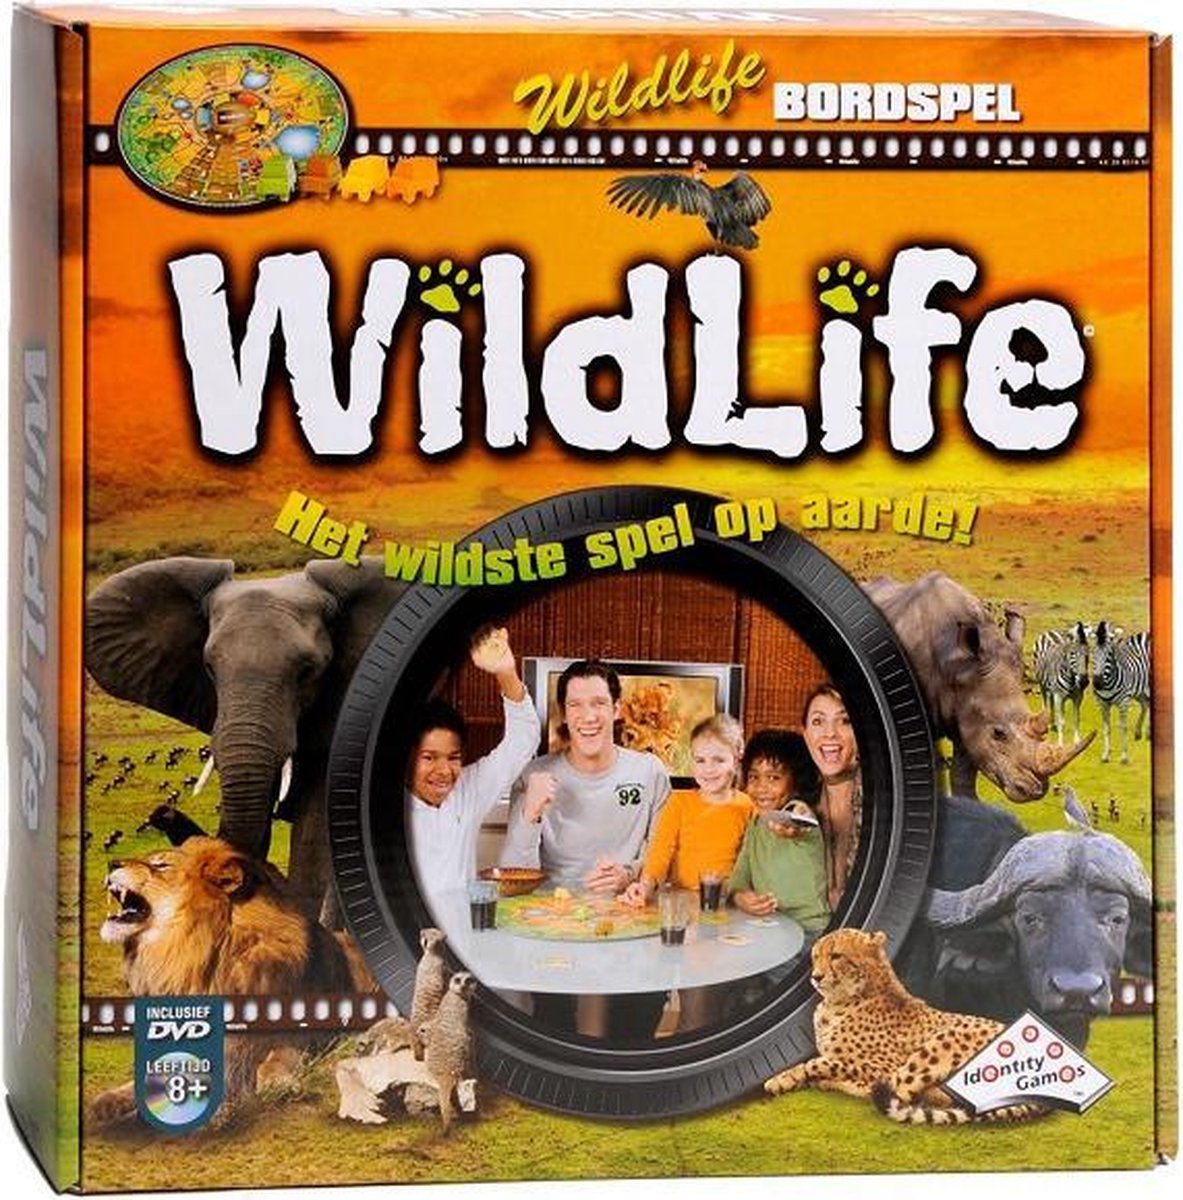 Bordspel Wildlife met DVD | Games | bol.com